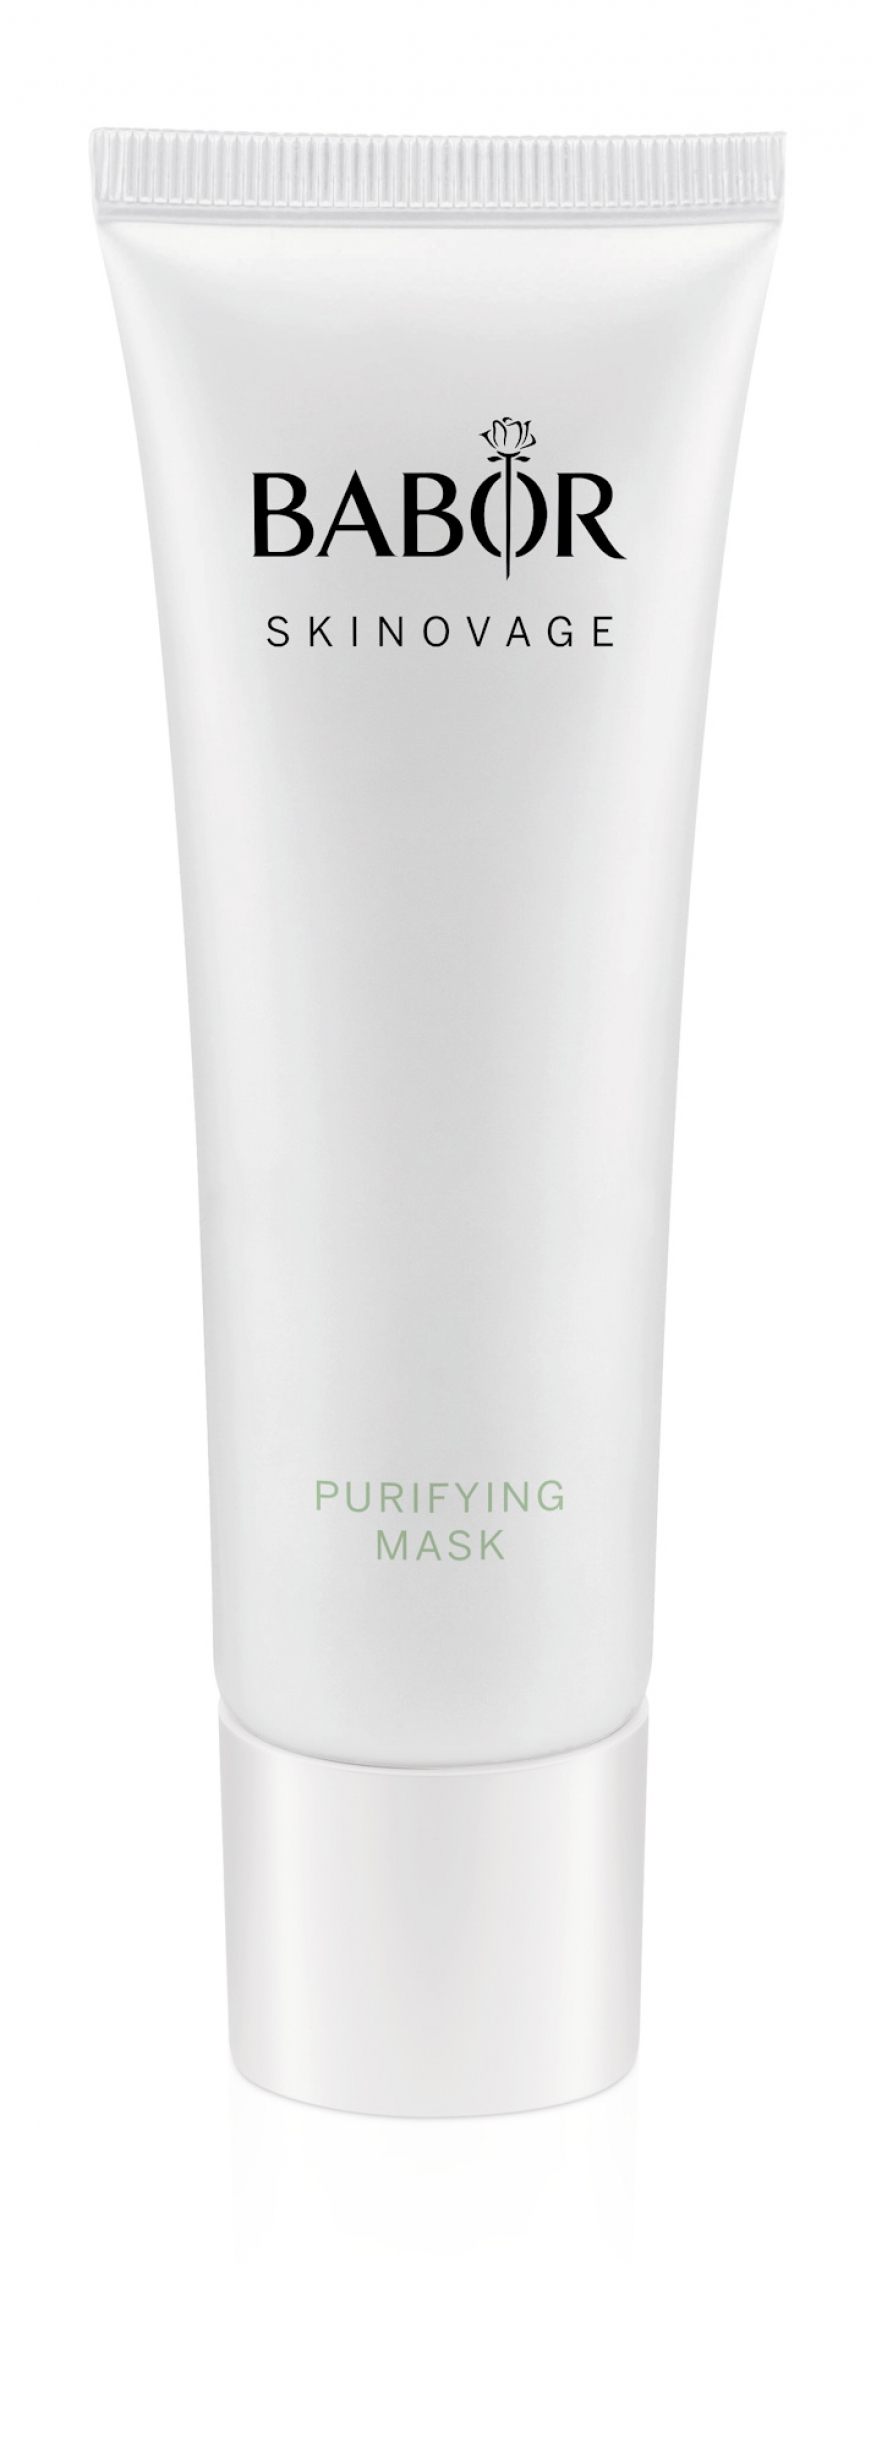 Purifying Mask 50ml